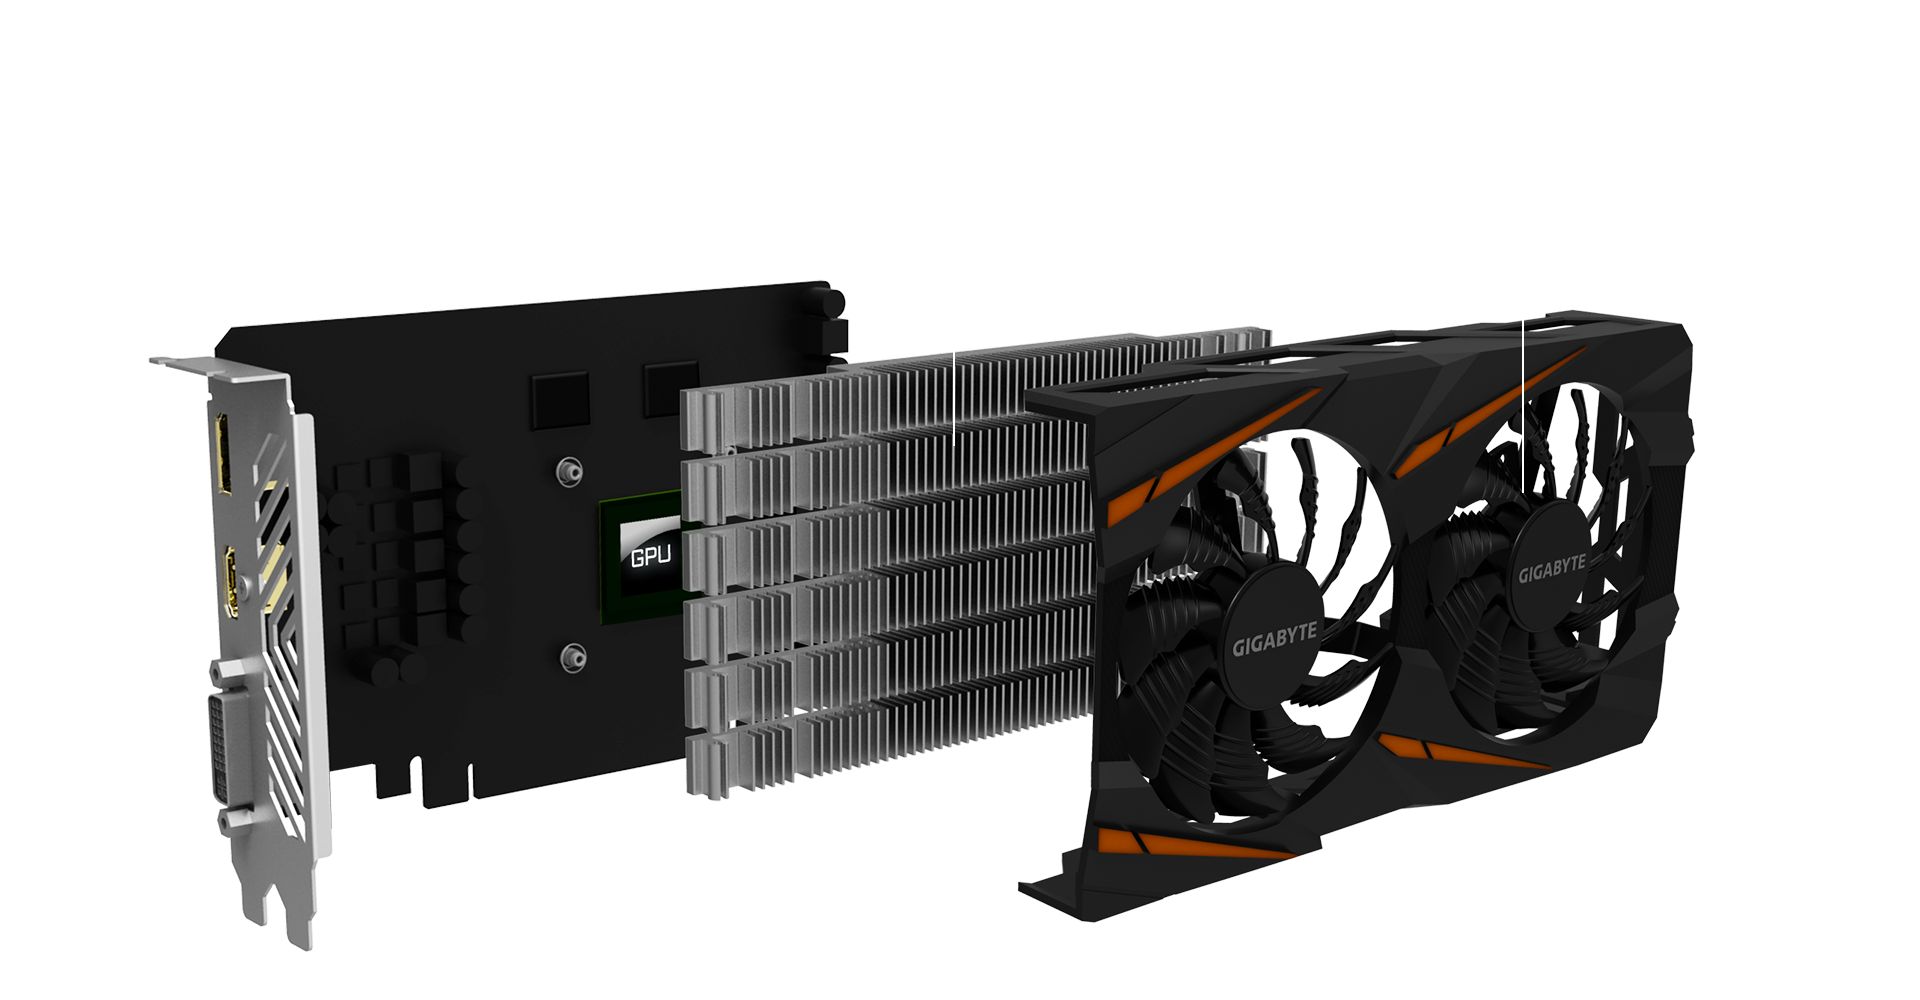 Radeon rx 550 series драйвера. RX 550 4gb Gigabyte. GV-rx550gaming OC-2gd. Gigabyte Radeon RX 560 GV-rx560oc-4gd видеокарта. GV-rx560gaming OC-4gd v2.0.